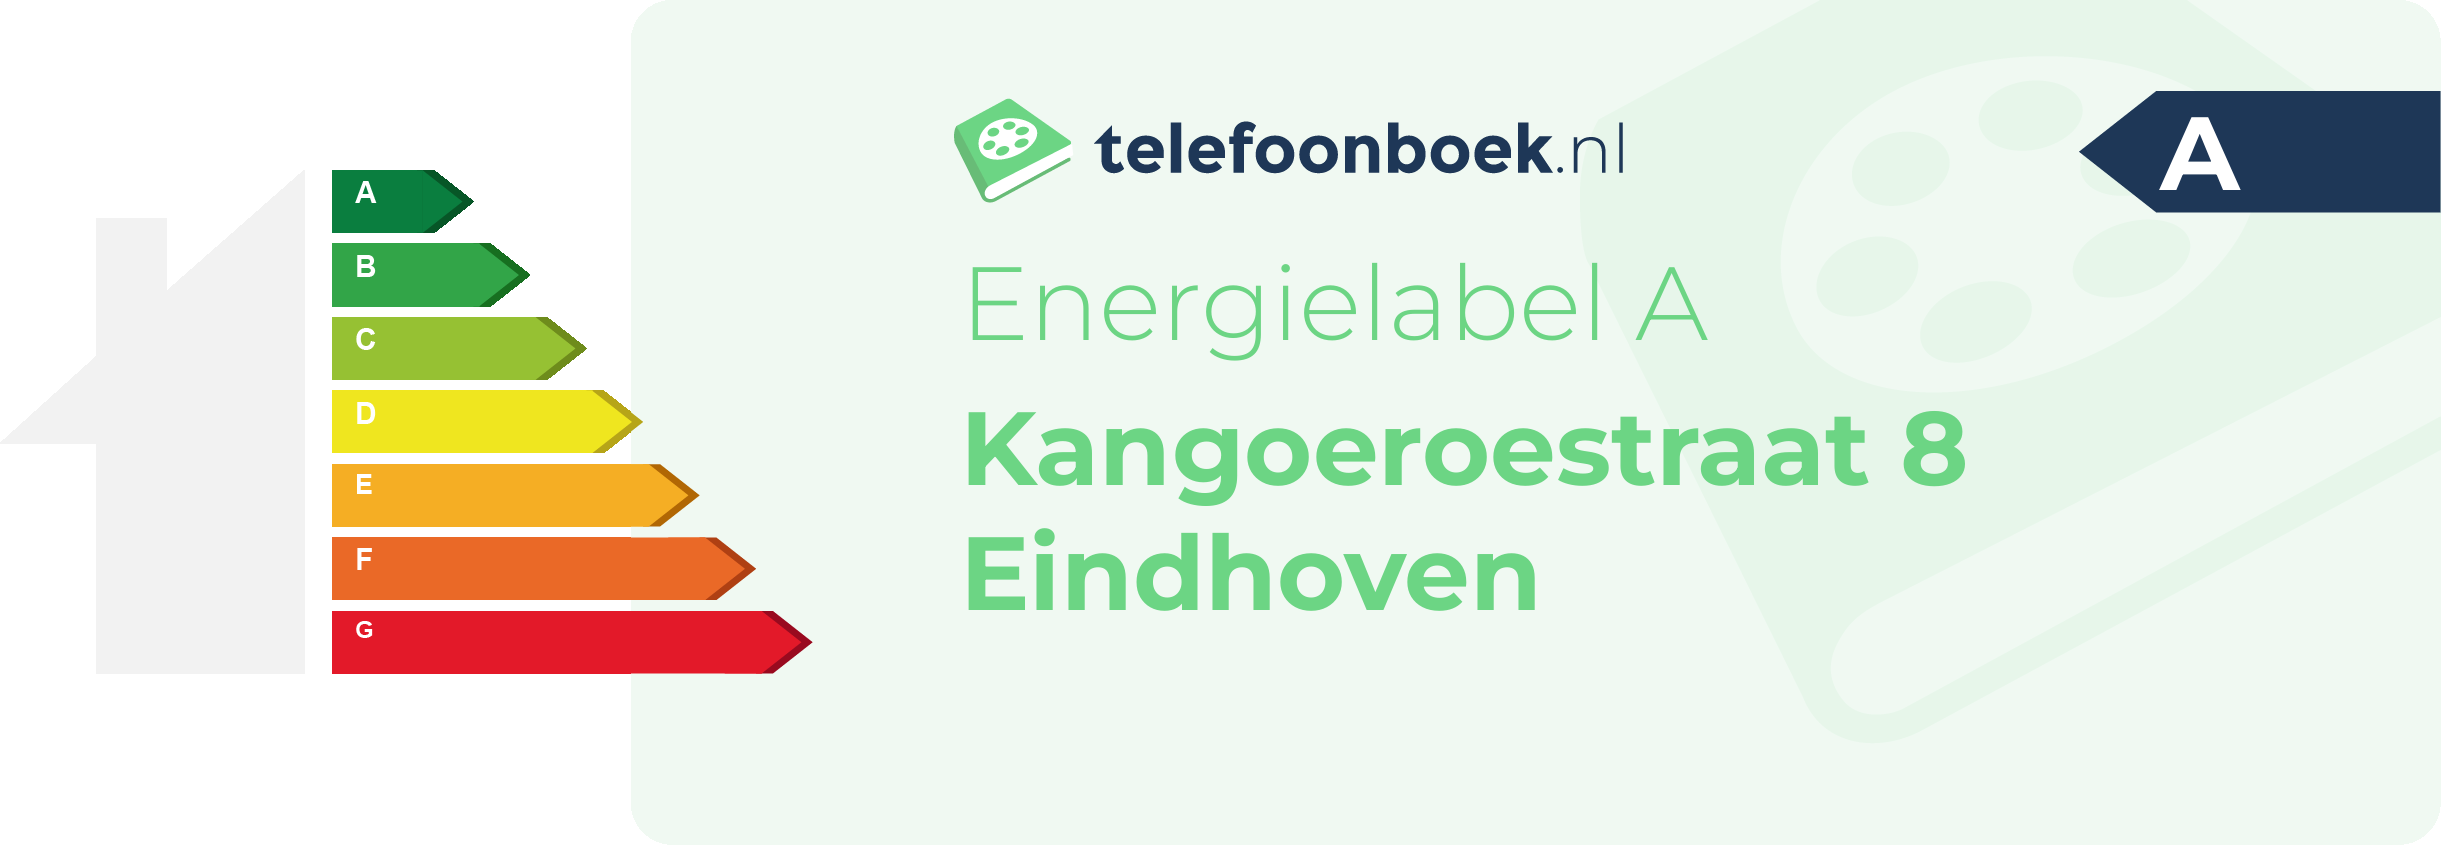 Energielabel Kangoeroestraat 8 Eindhoven